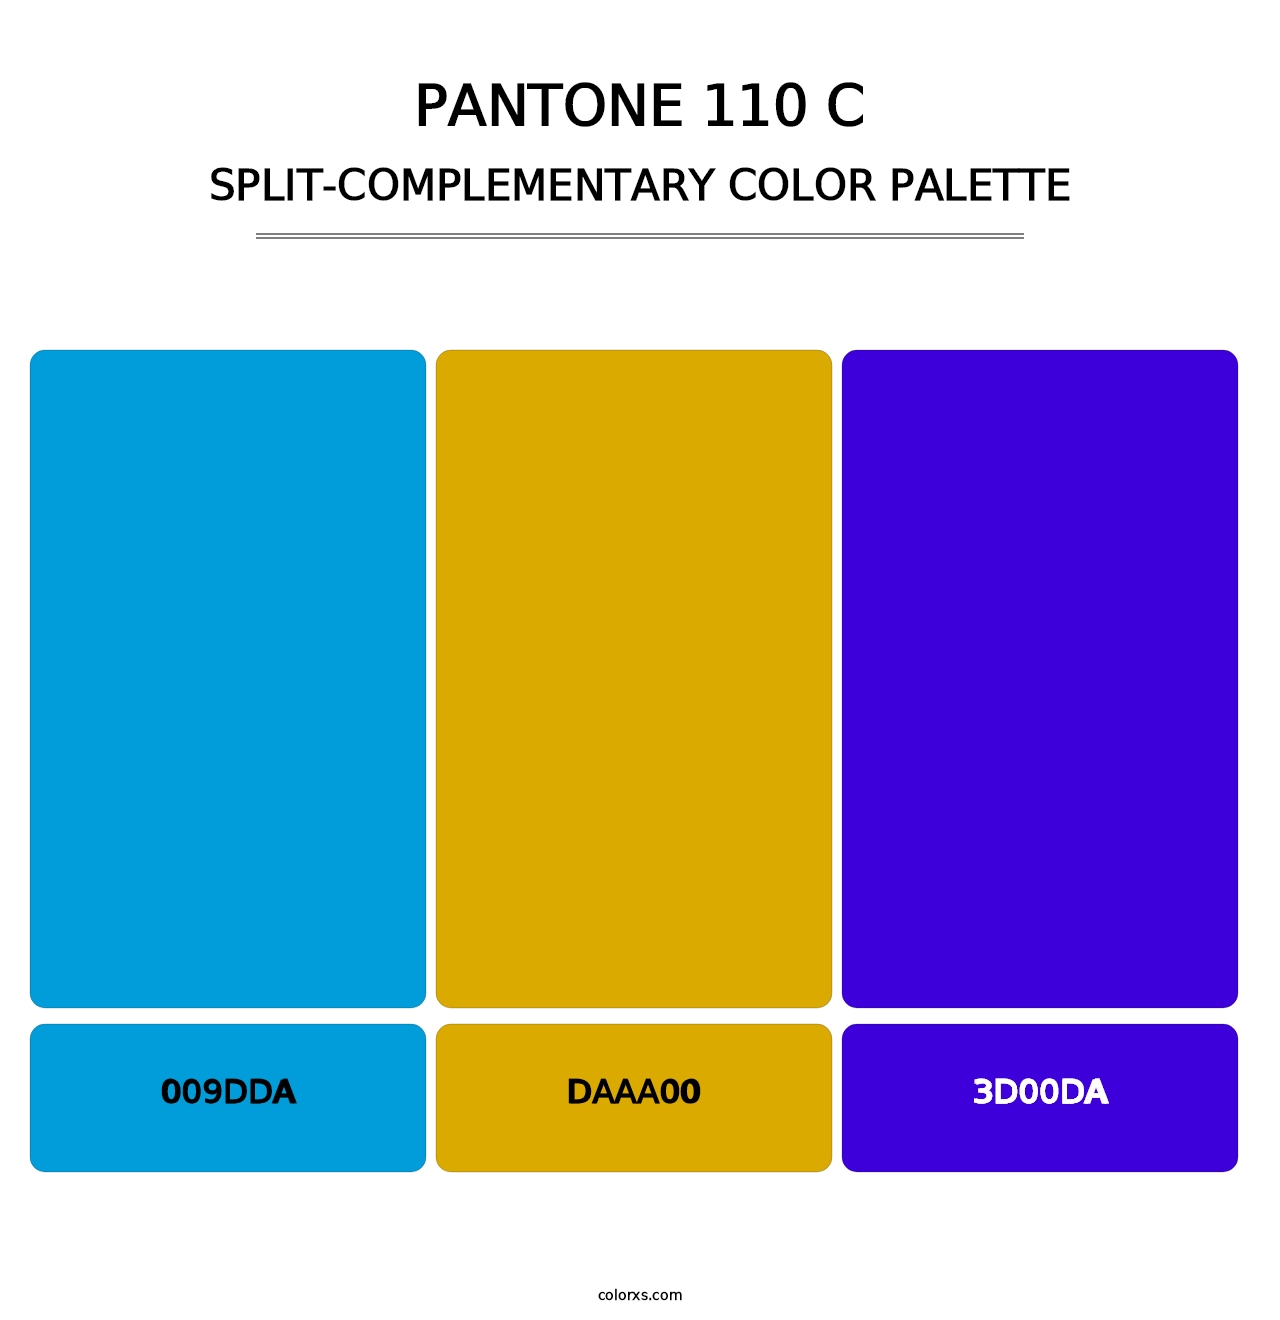 PANTONE 110 C - Split-Complementary Color Palette